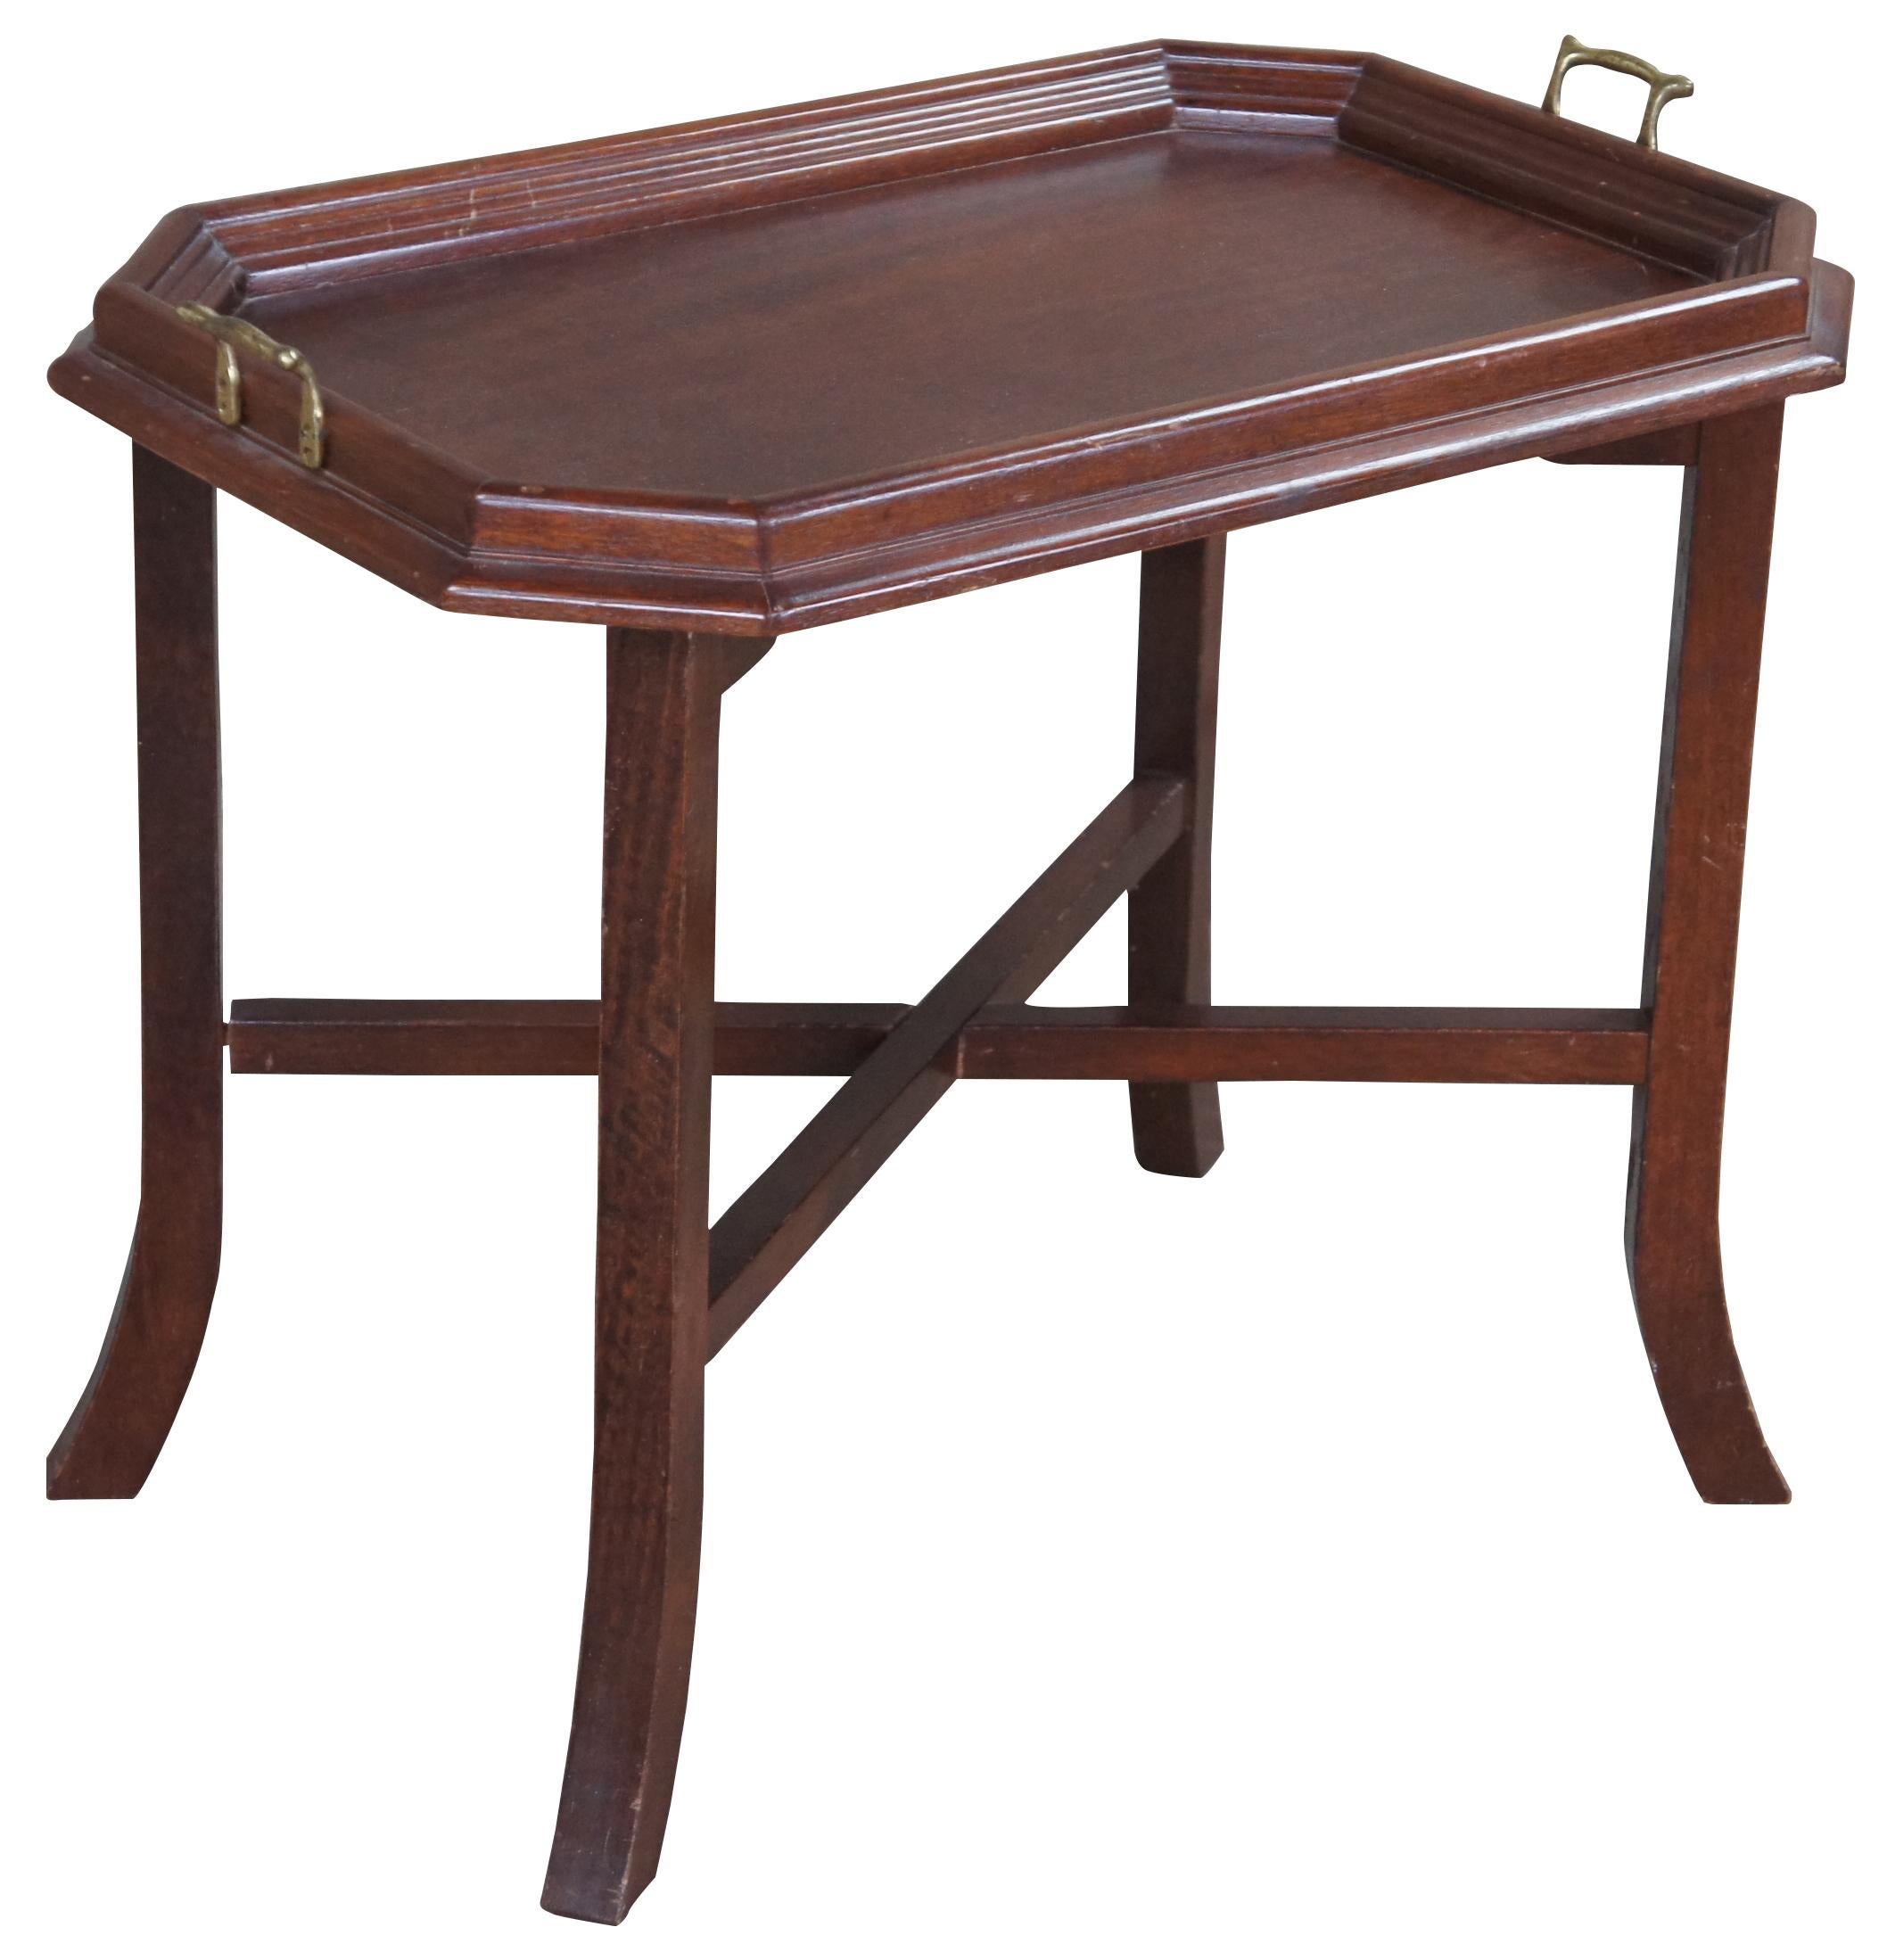 Vintage Kiefer Tablett Tisch. Mit einem klappbaren Sockel, der durch eine X-Strecke verbunden ist, und einer rechteckigen, oktogonförmigen Platte mit Messinggriffen.
  